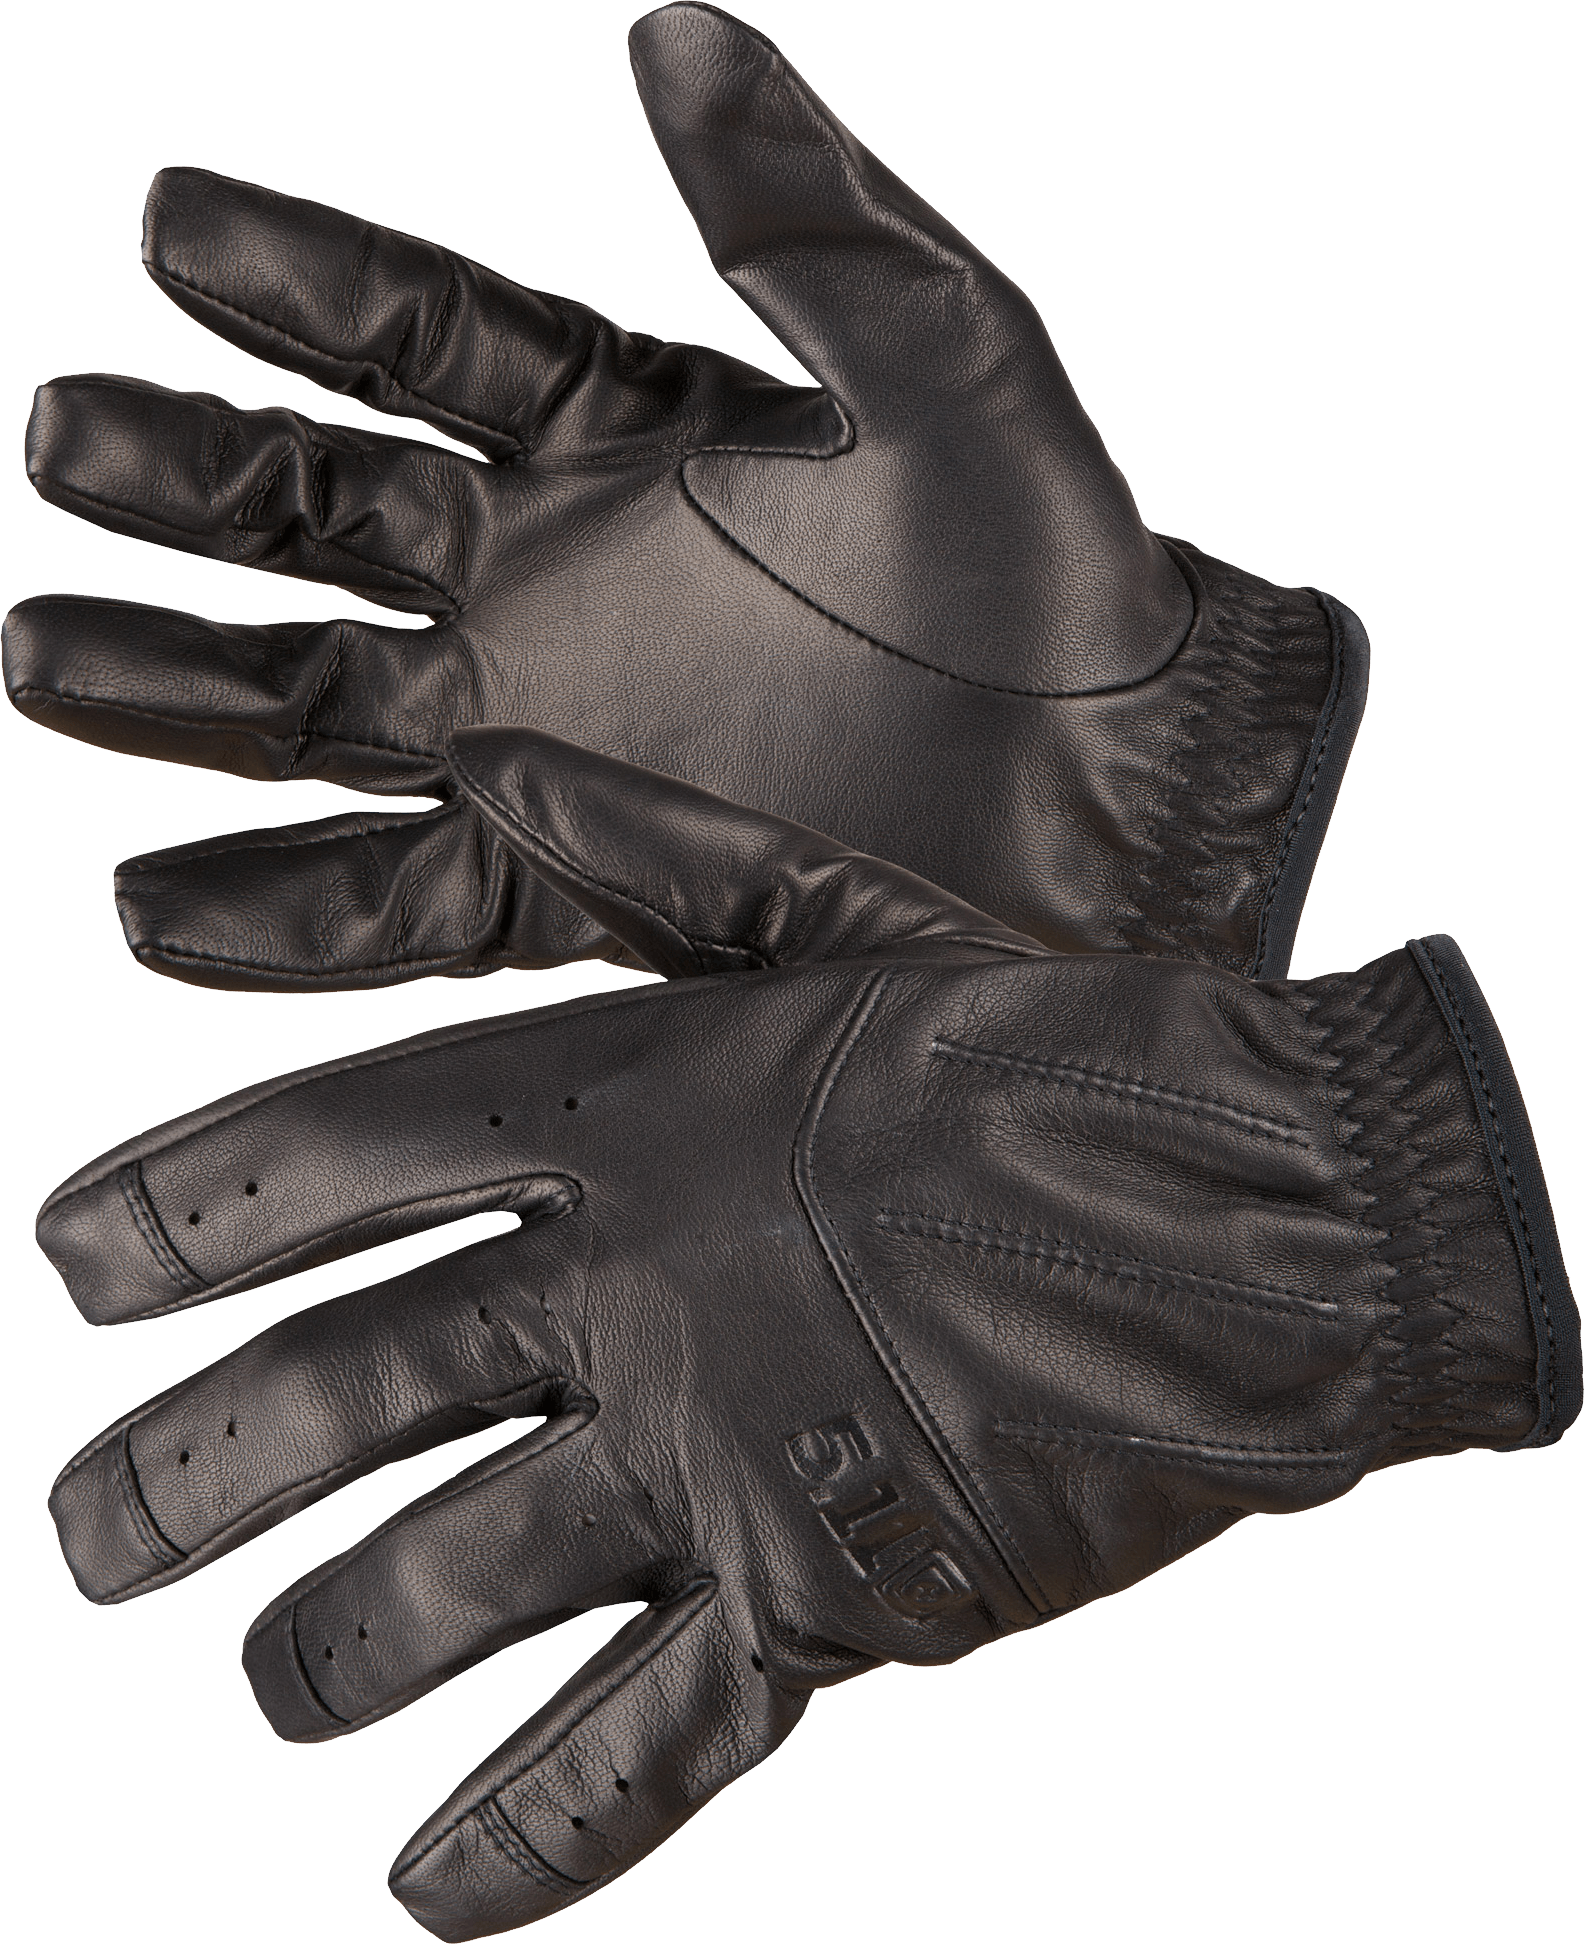 Black Leather Gloves Png Image PNG Image